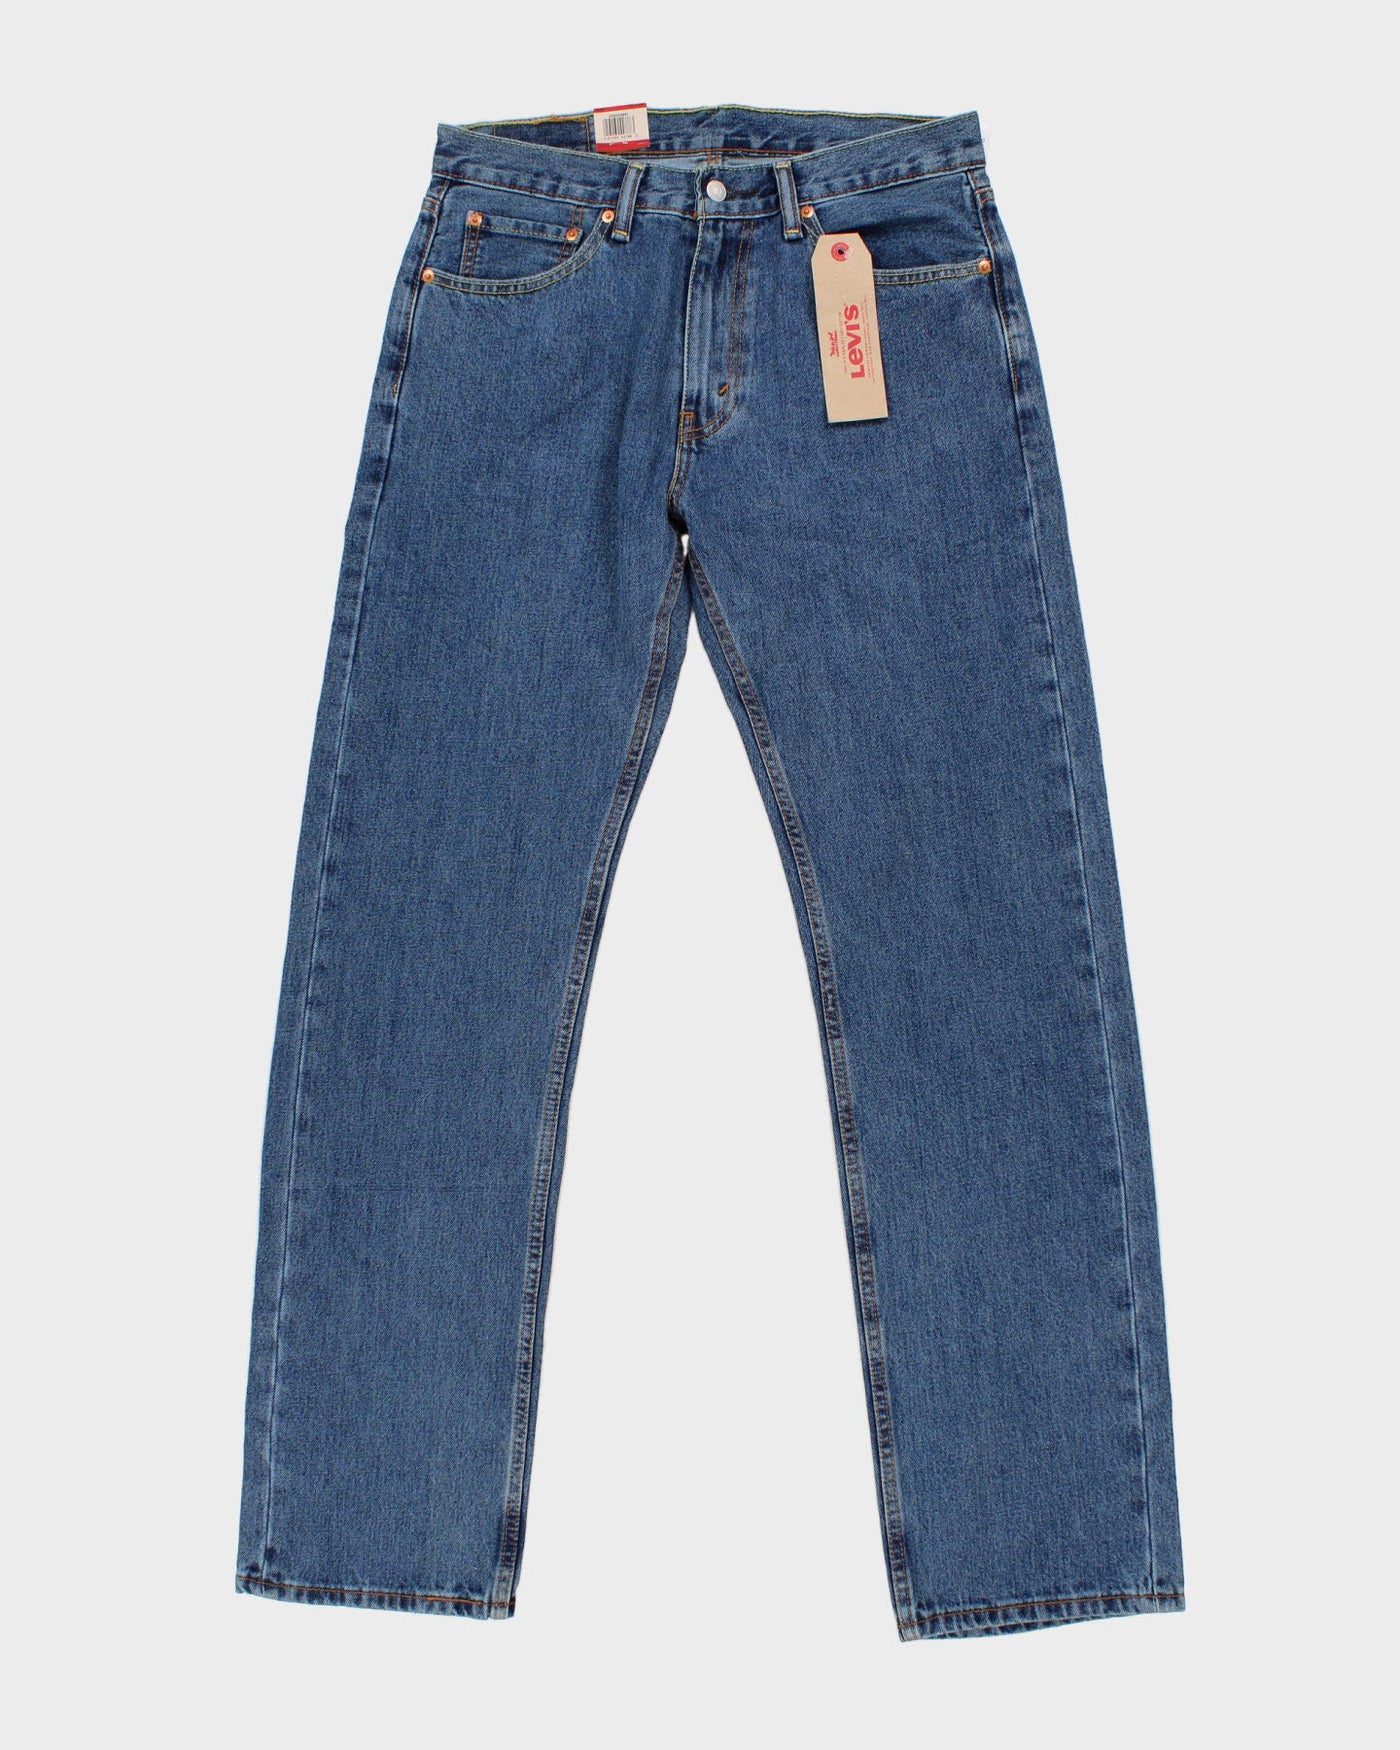 Levi's 505 Medium Wash Jeans - W32 L34